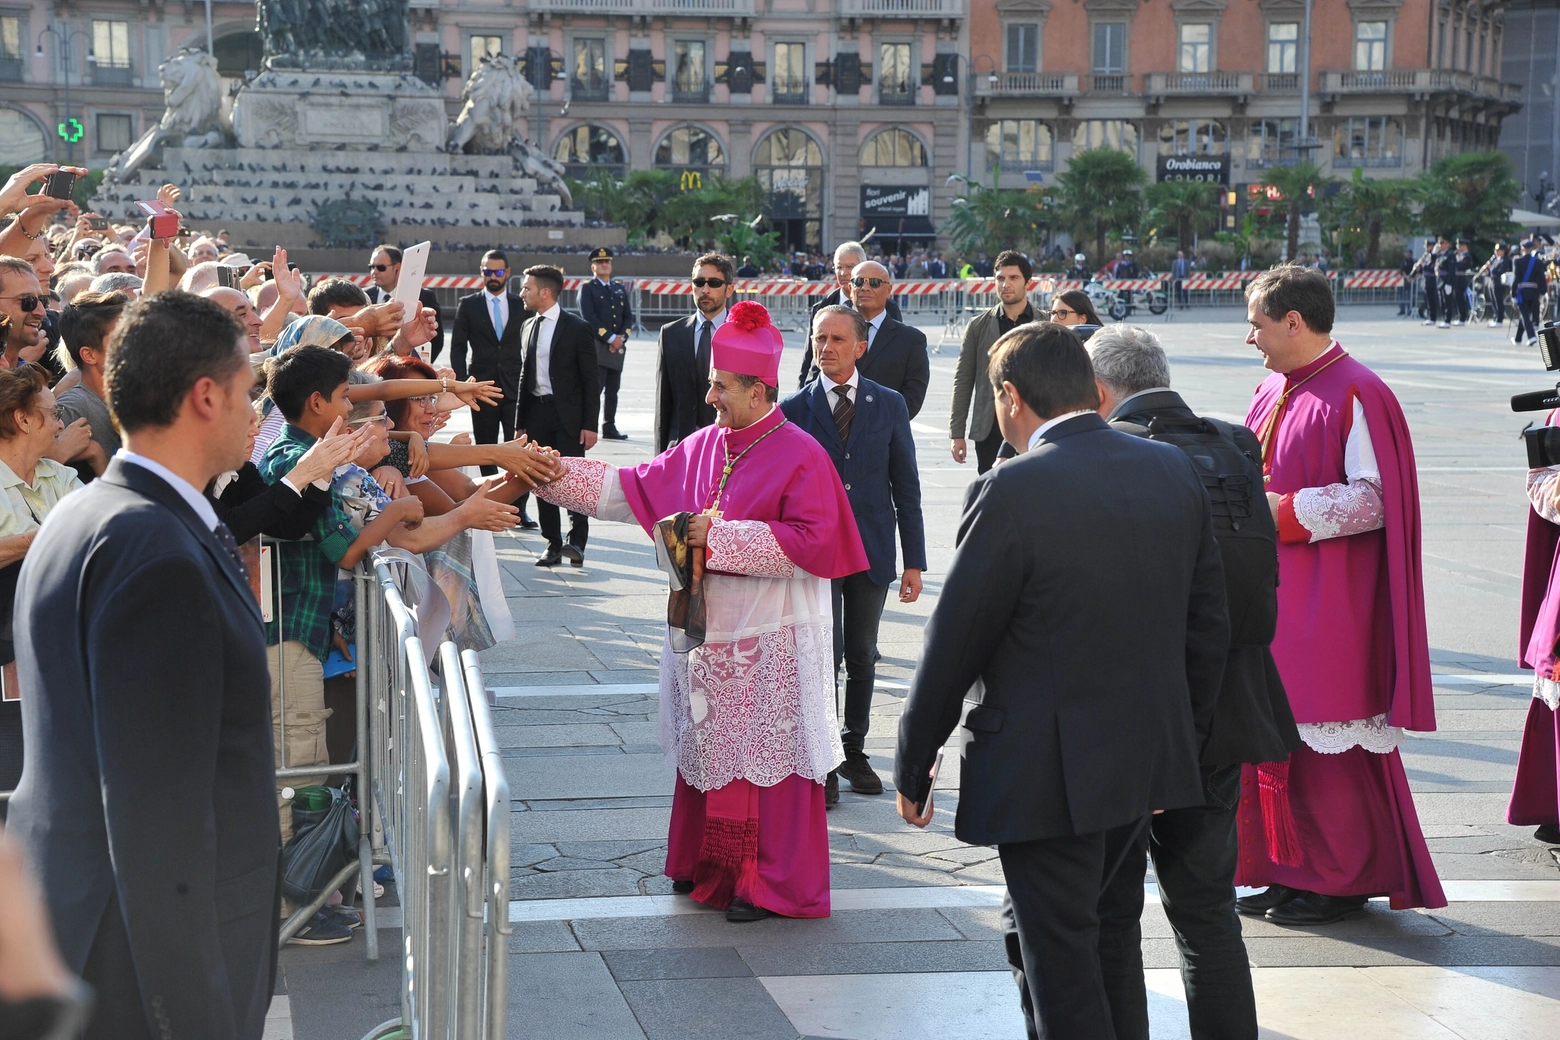 L'arcivescovo Delpini saluta i fedeli in piazza Duomo (Newpress)